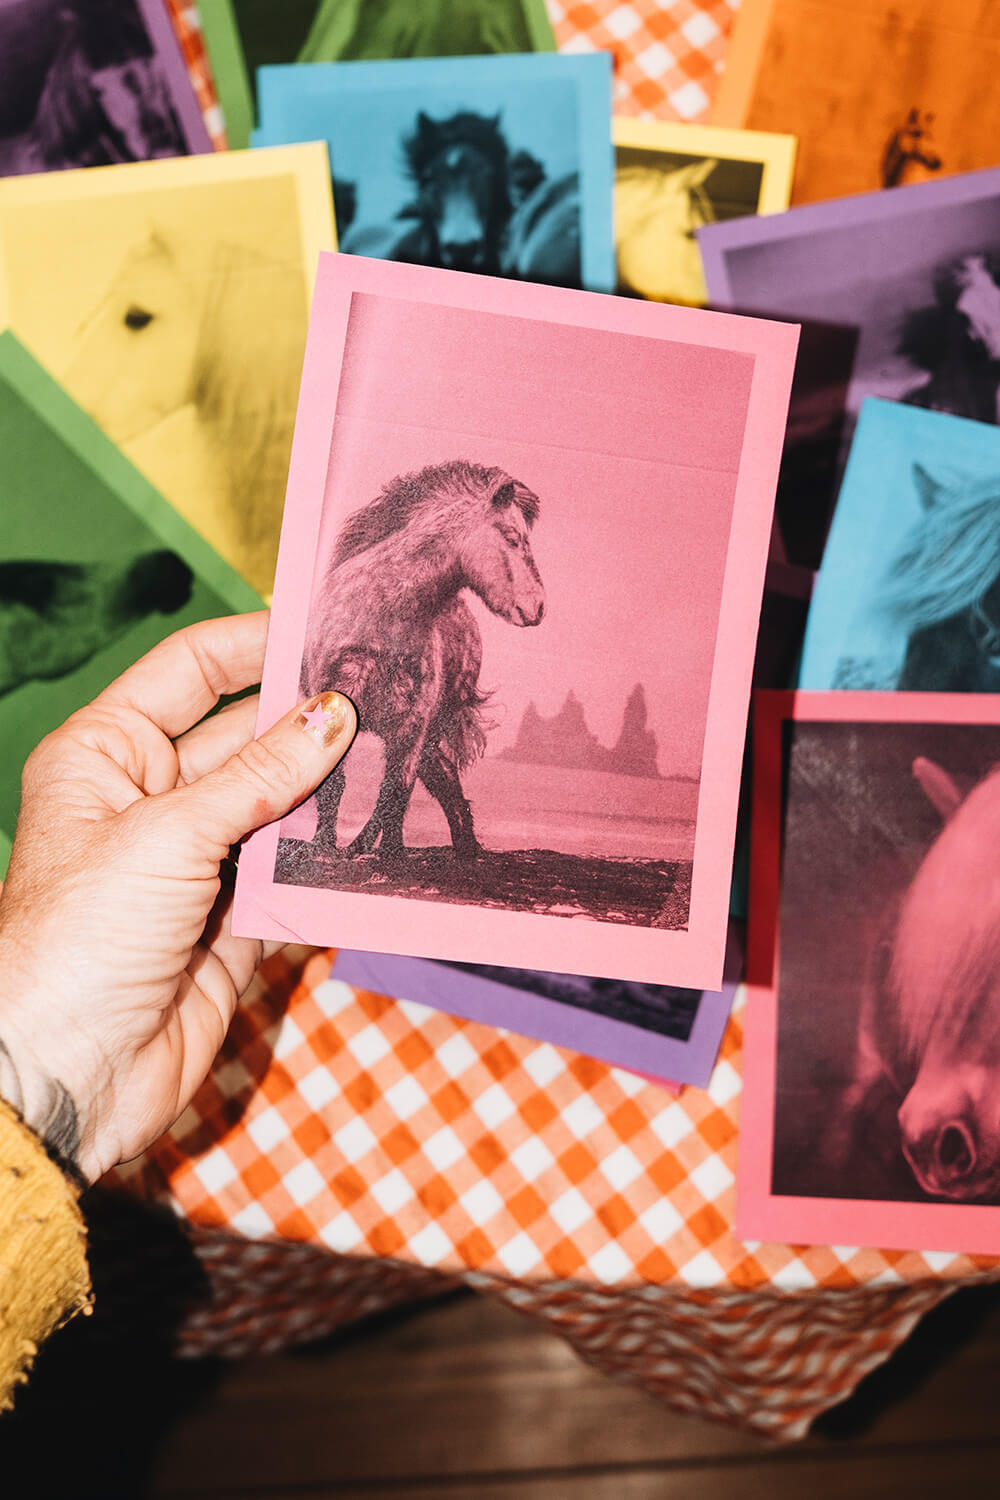 Pferd, Fußball oder Enkelkinder? Wir basteln einen Adventskalender aus Briefumschlägen und Fotos.